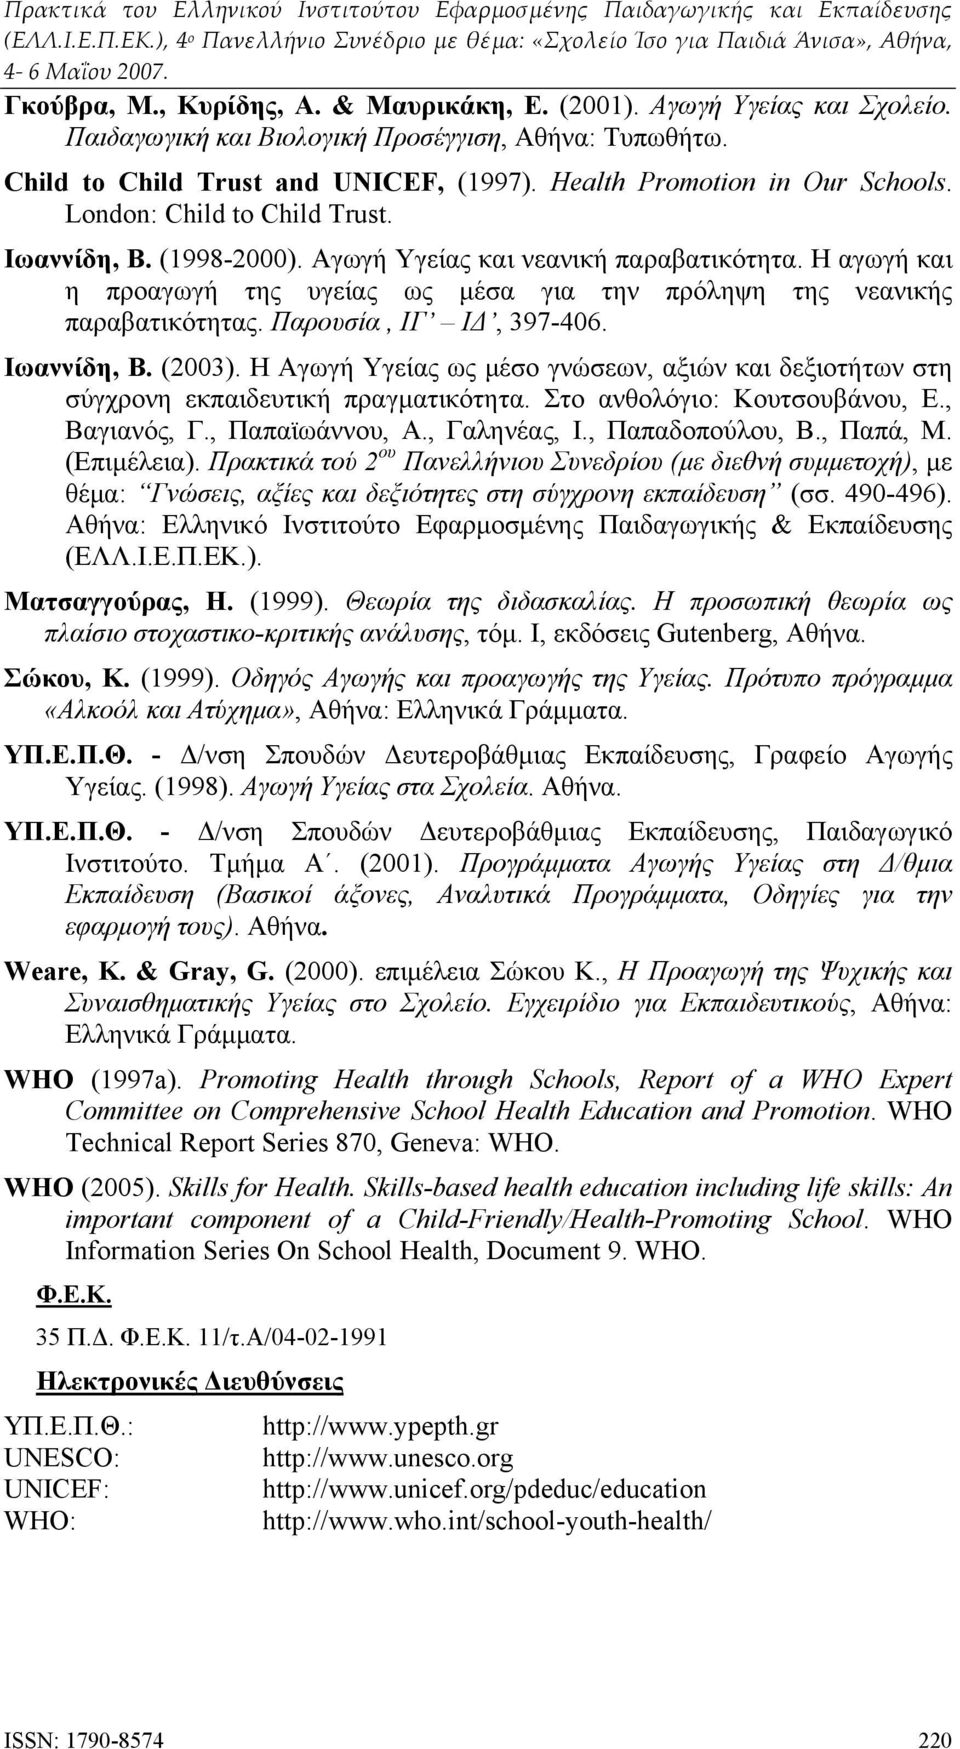 Η αγωγή και η προαγωγή της υγείας ως μέσα για την πρόληψη της νεανικής παραβατικότητας. Παρουσία, ΙΓ ΙΔ, 397-406. Ιωαννίδη, Β. (2003).